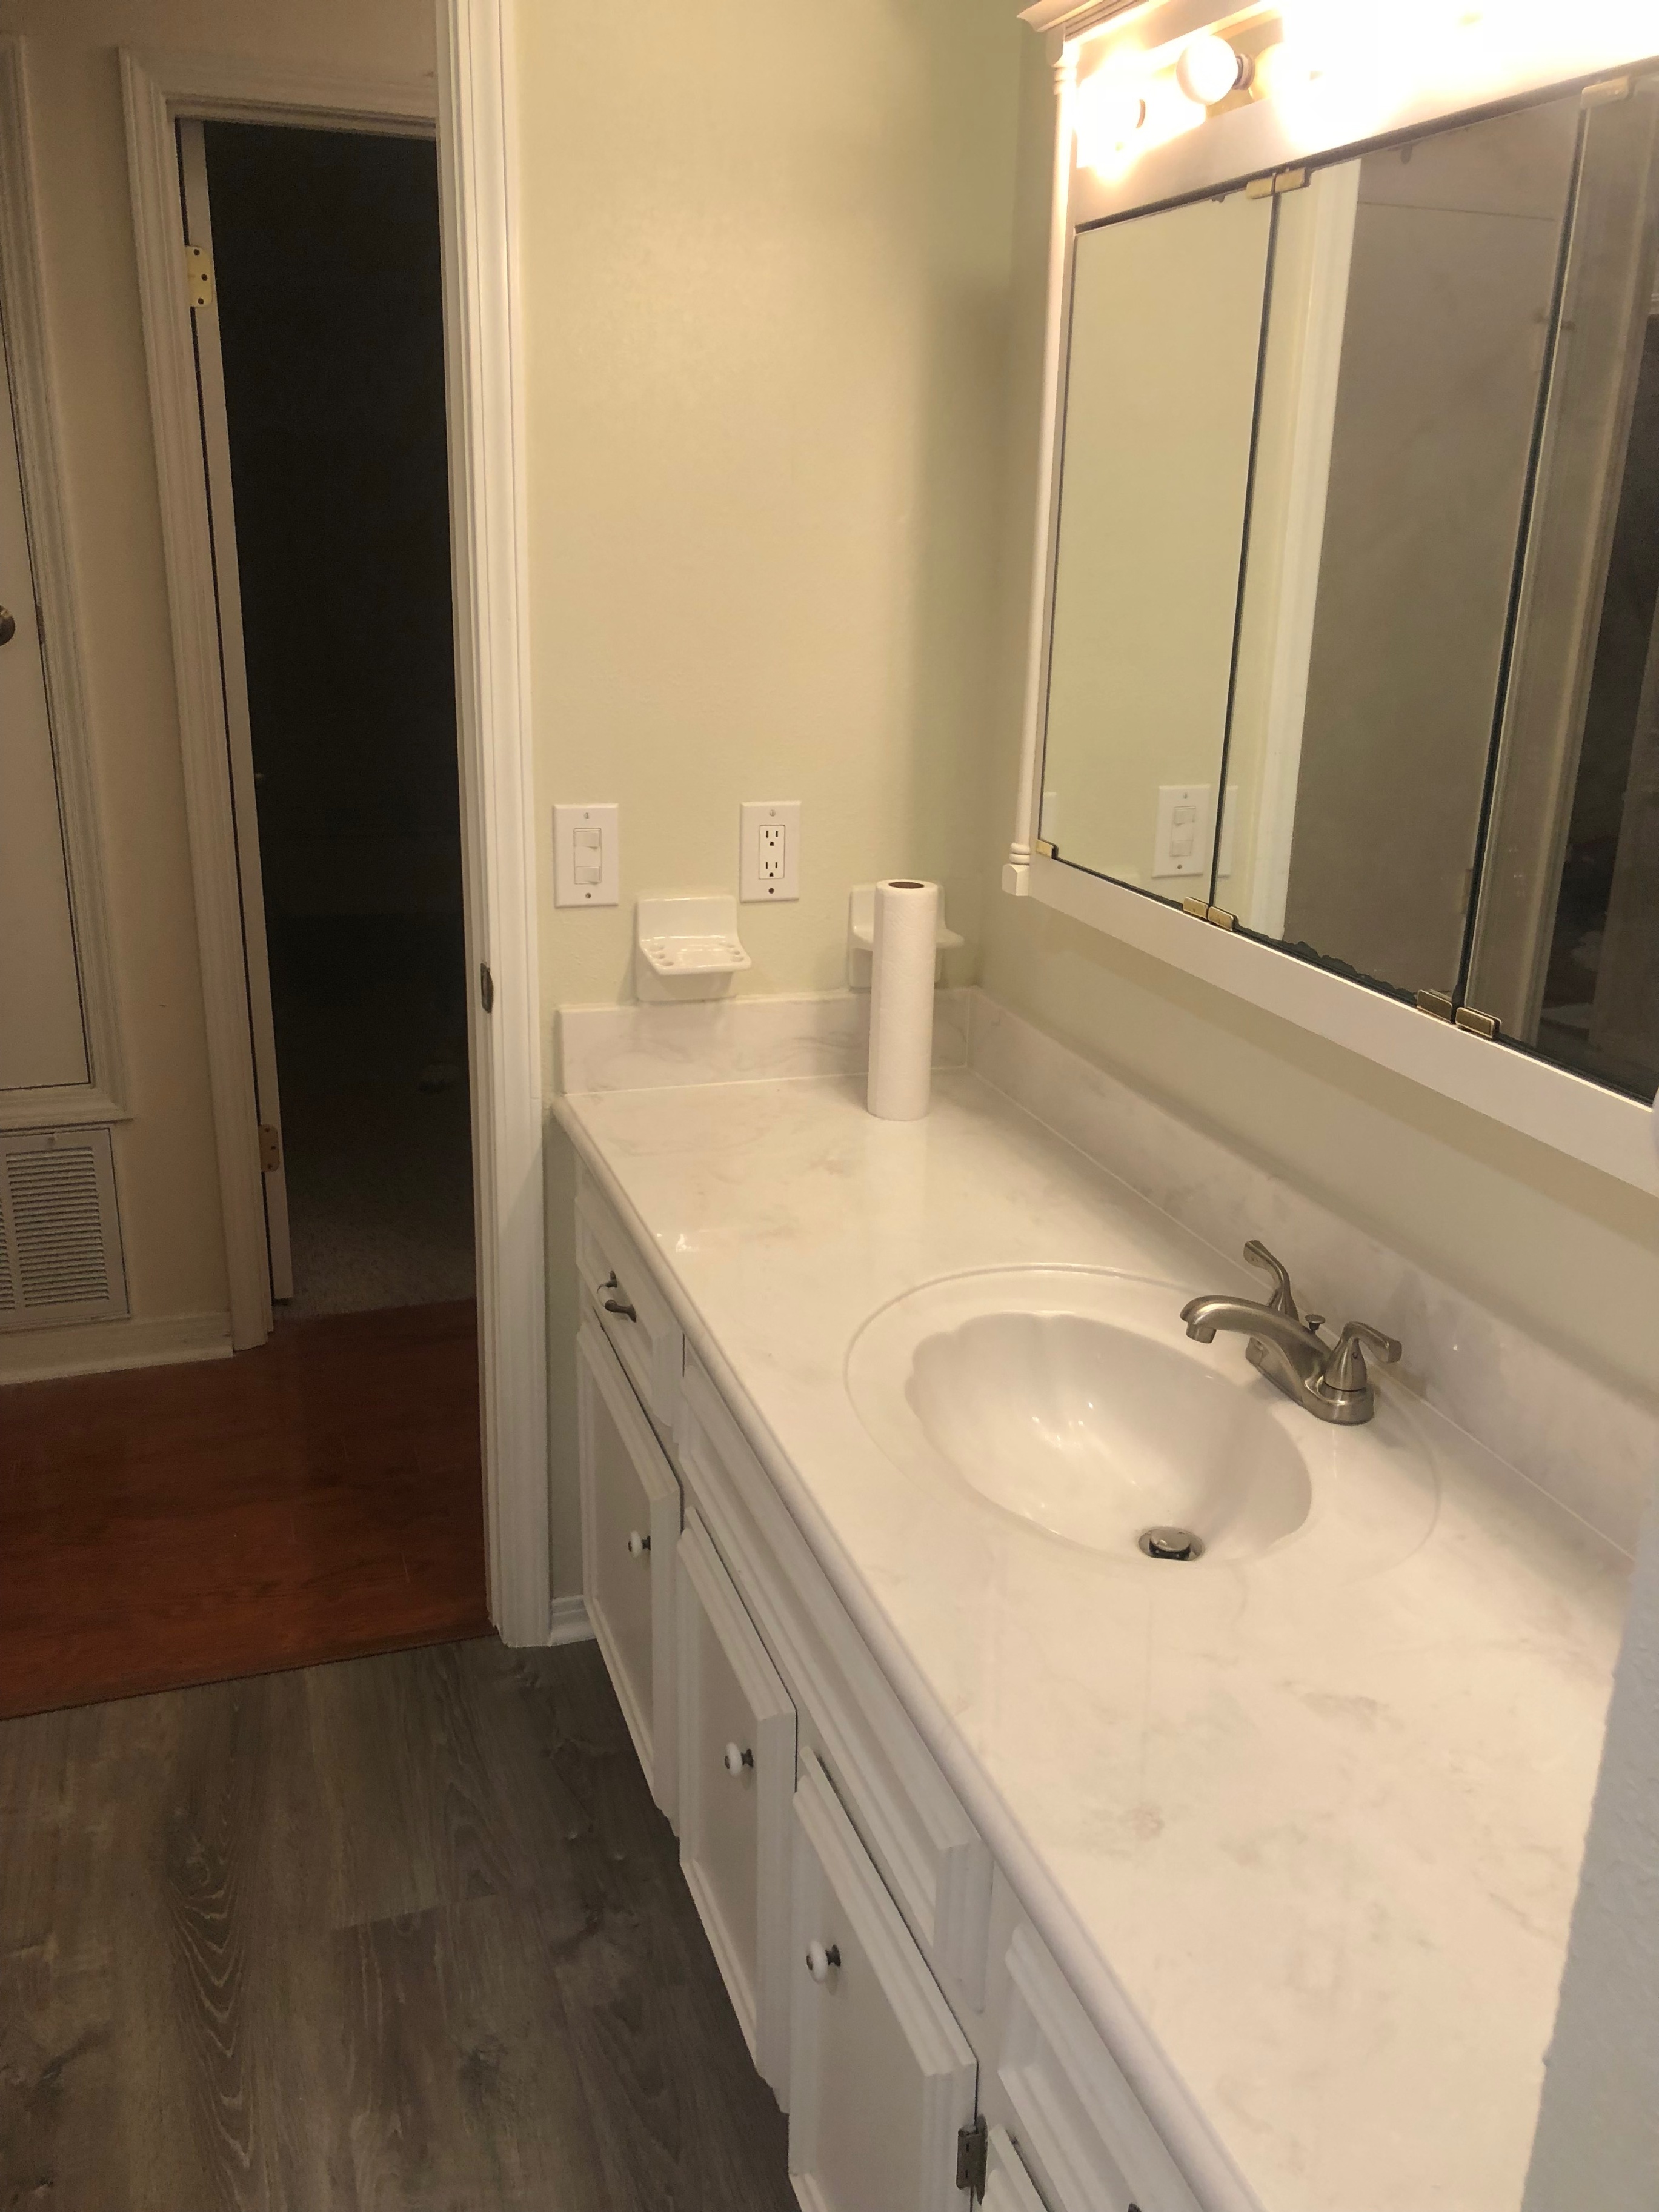 Vanity Top and Floor; Full bathroom remodel 